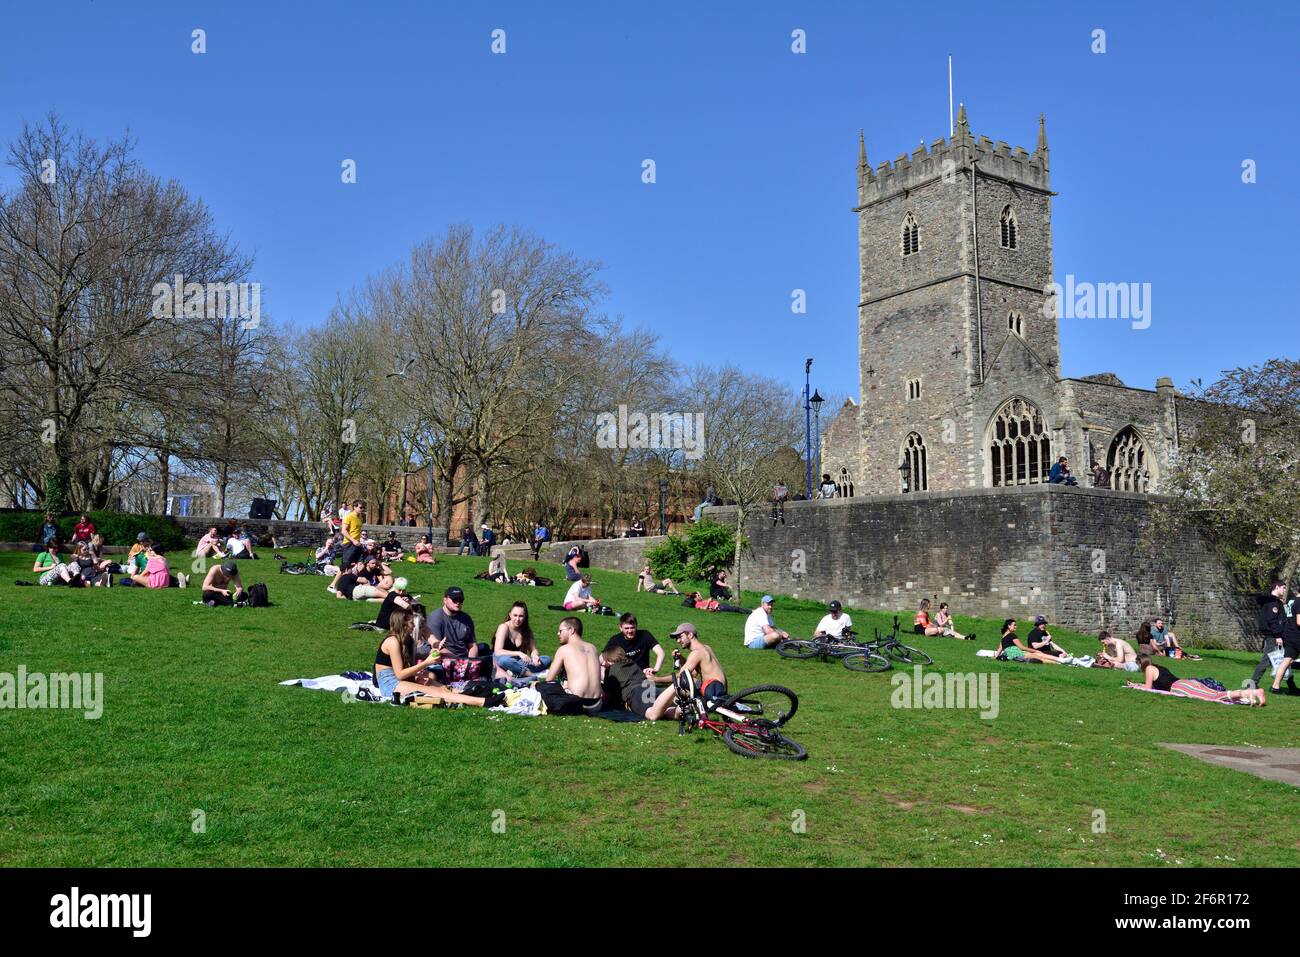 Groupes de personnes profitant du soleil dans le parc du château de Bristol Par l'église Saint-Pierre après que le blocage du coronavirus a été assoupli Banque D'Images